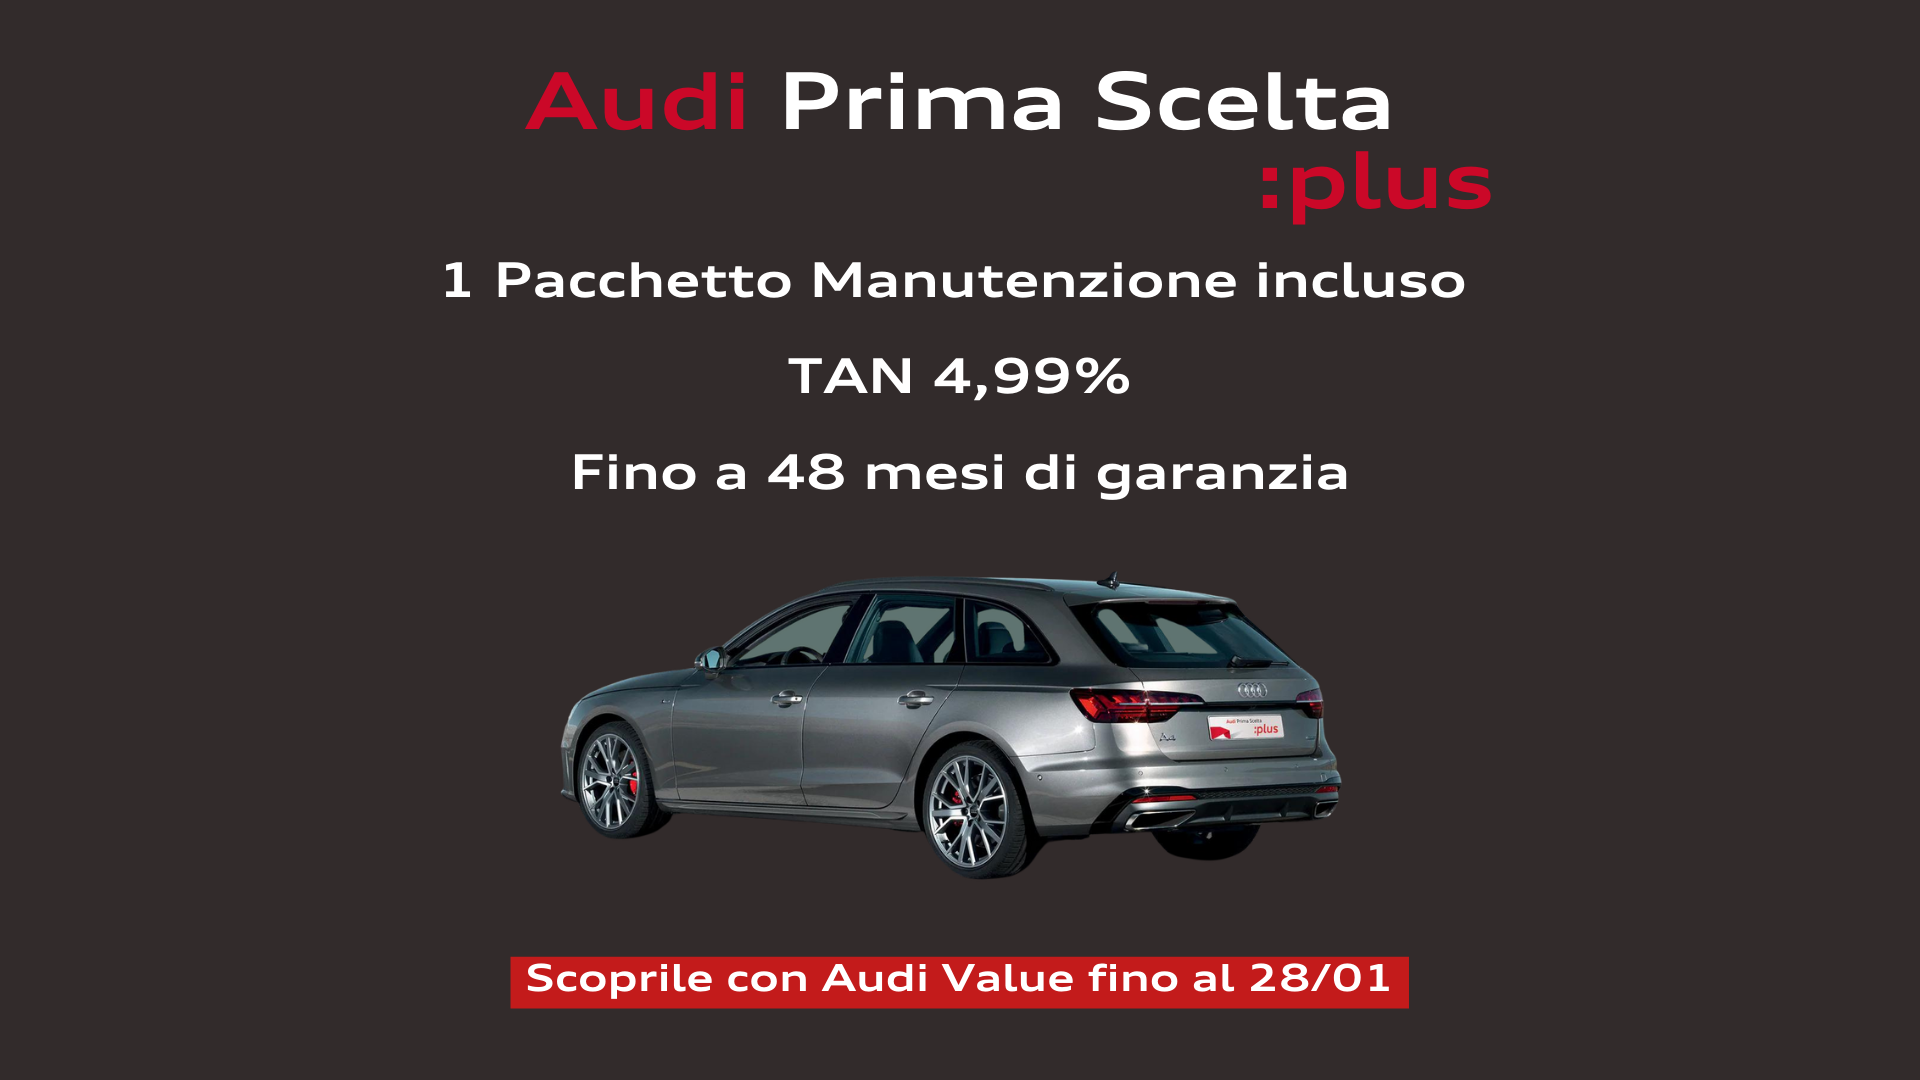 Promozione Audi Prima Scelta :plus con Pacchetto Manutenzione